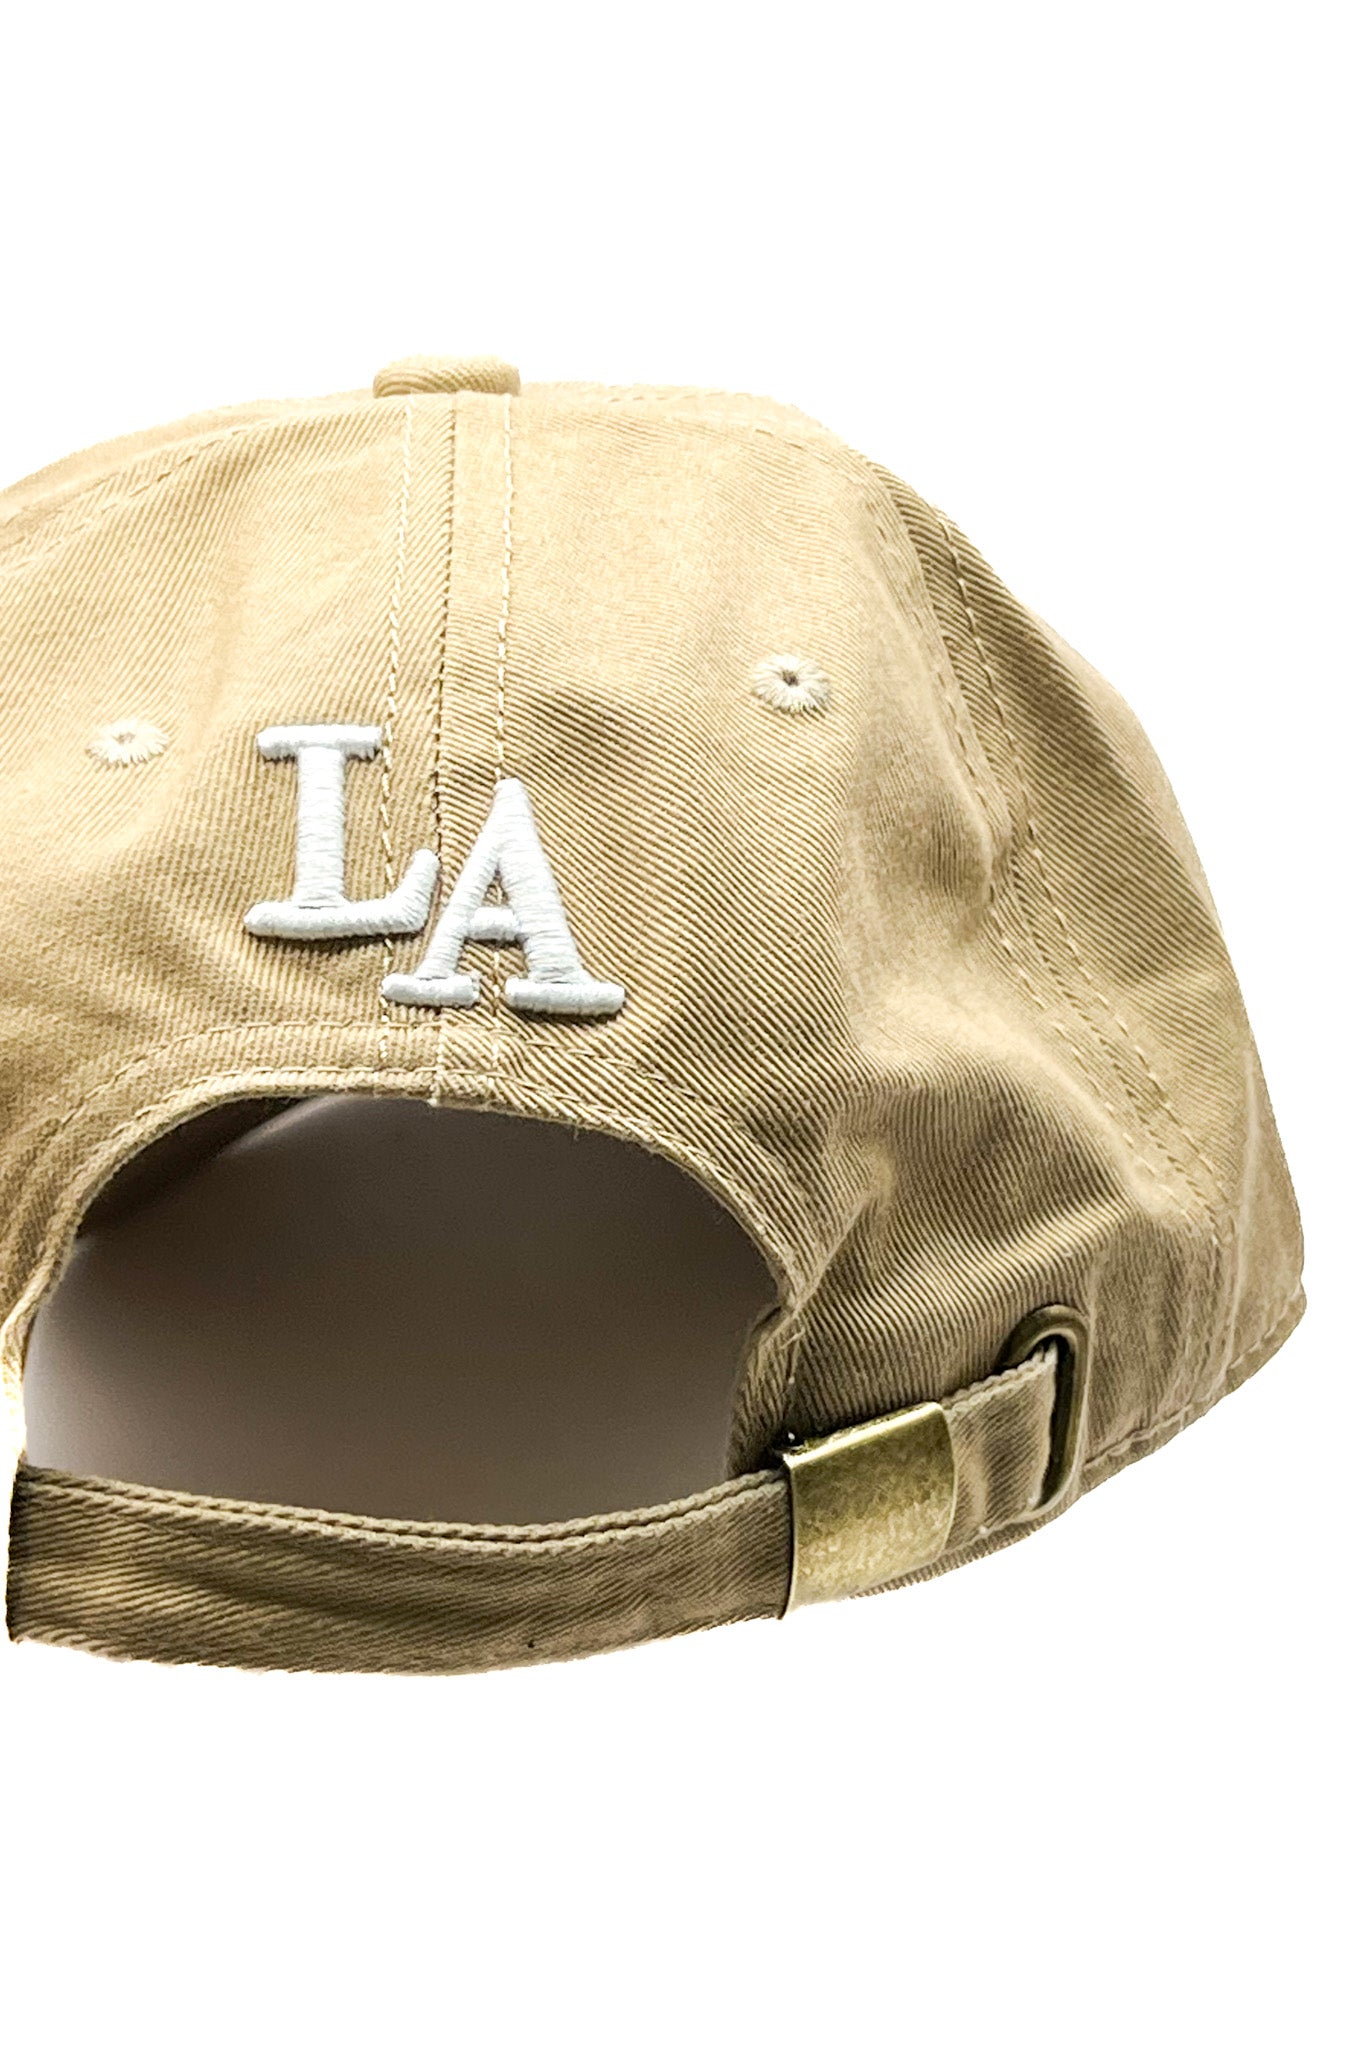 Solid LA Baseball Cap